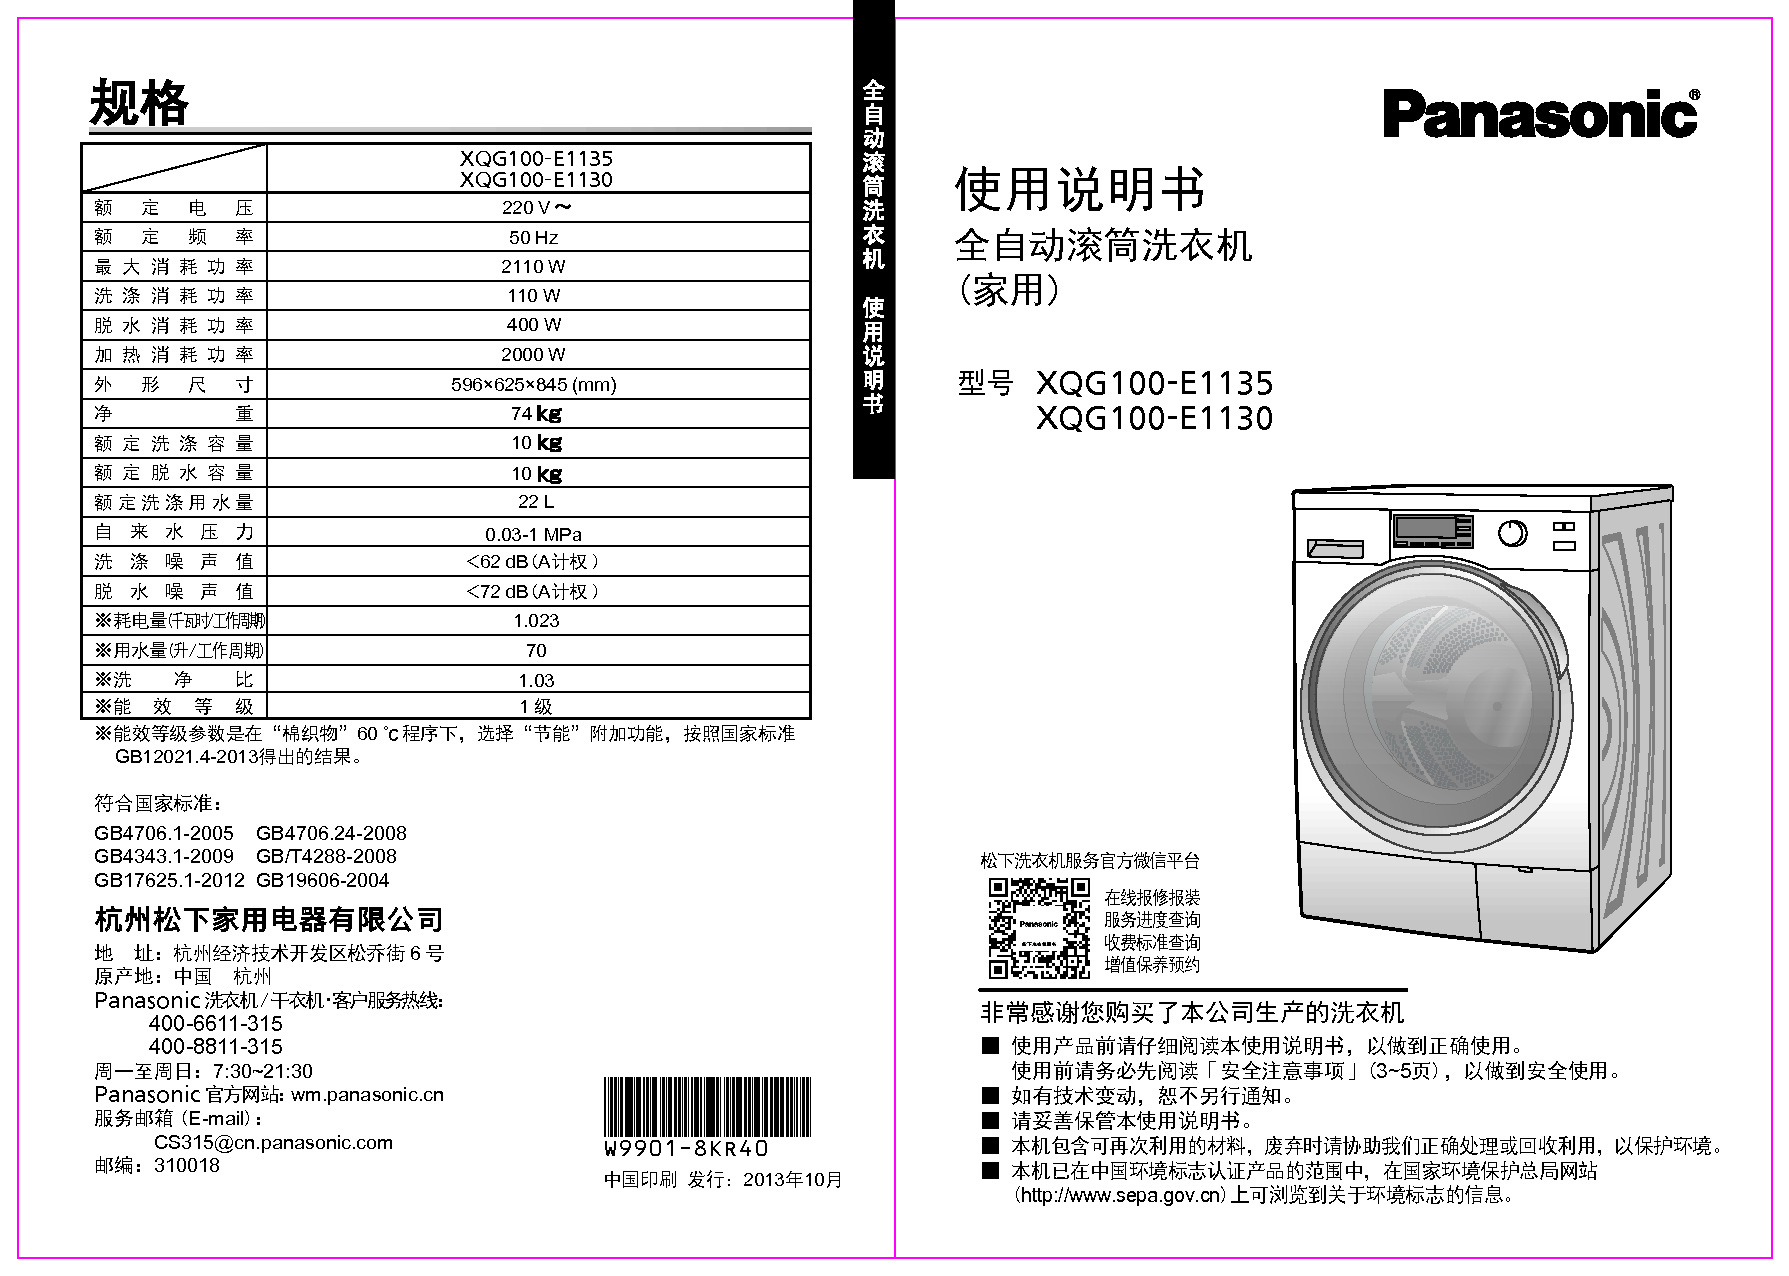 松下 Panasonic XQG100-E1130 使用说明书 封面